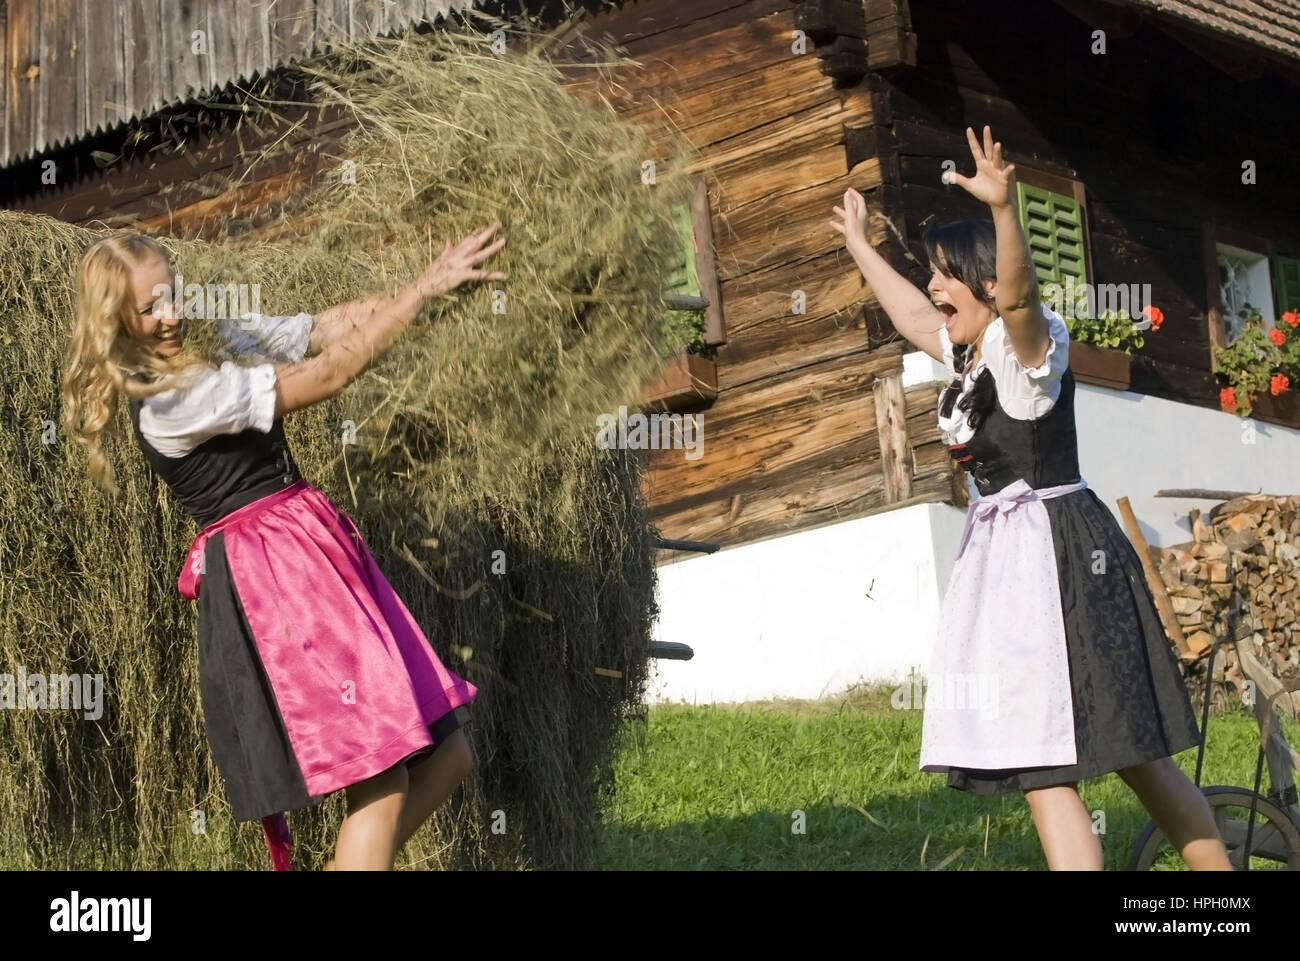 Model released , Zwei junge Frauen im Dirndl bei der Heuarbeit - women in dirndl do hay harvest Stock Photo